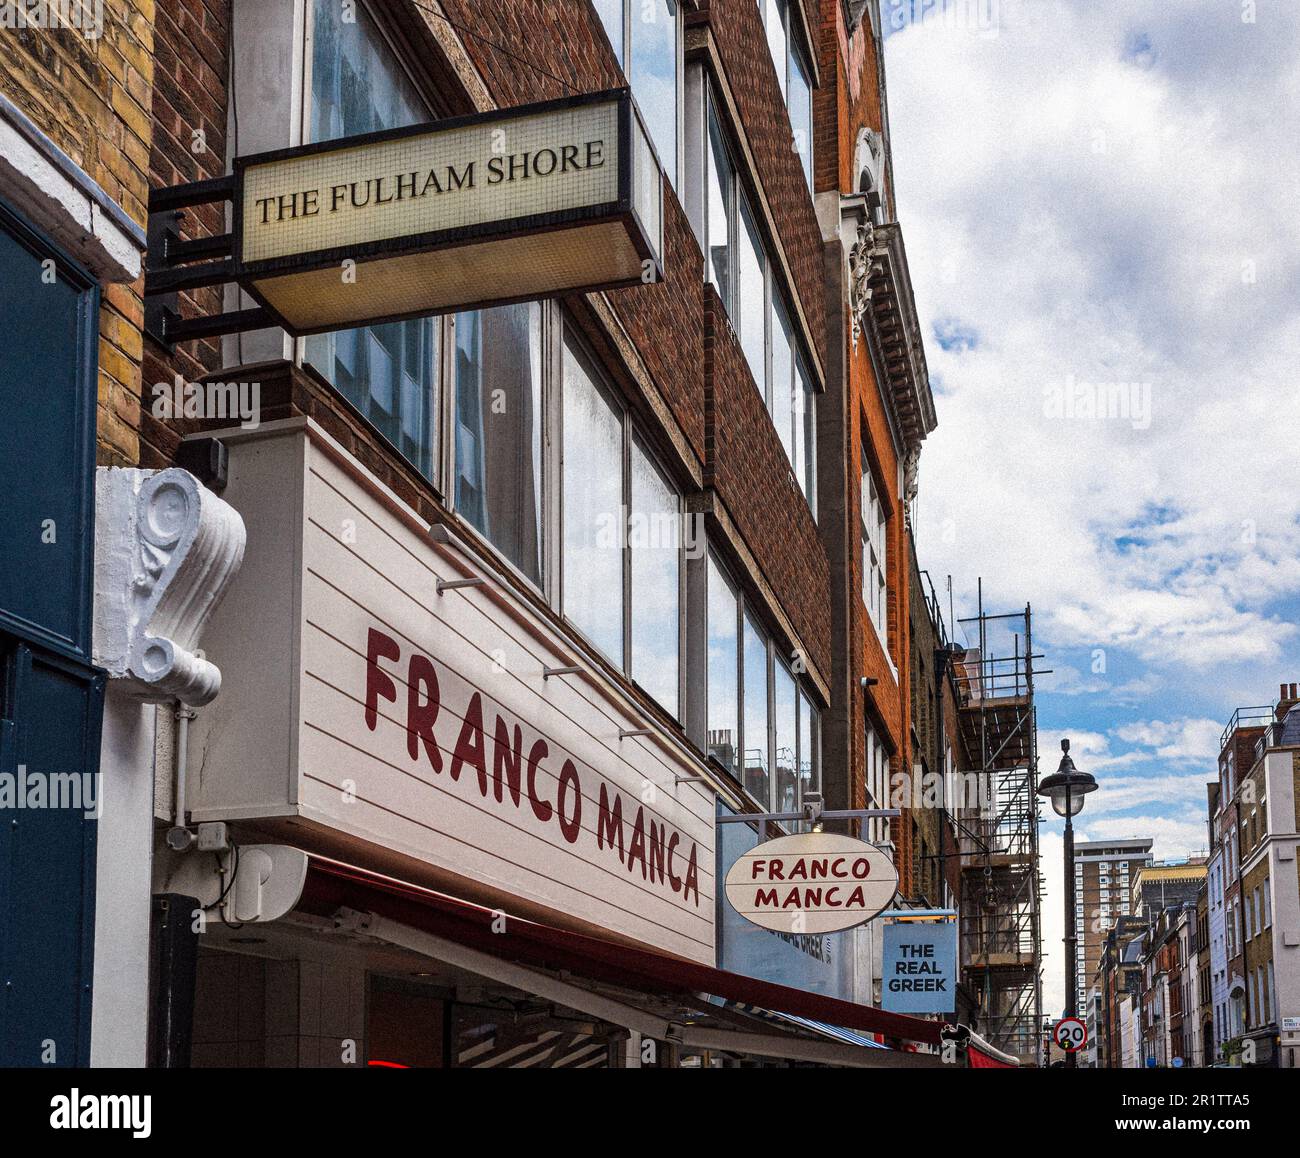 Le Fulham Shore PLC sur Berwick Street, Soho, Londres. Le Fulham Shore est une entreprise de restauration propriétaire de Franco Manca et des chaînes de restaurants grecques. Banque D'Images